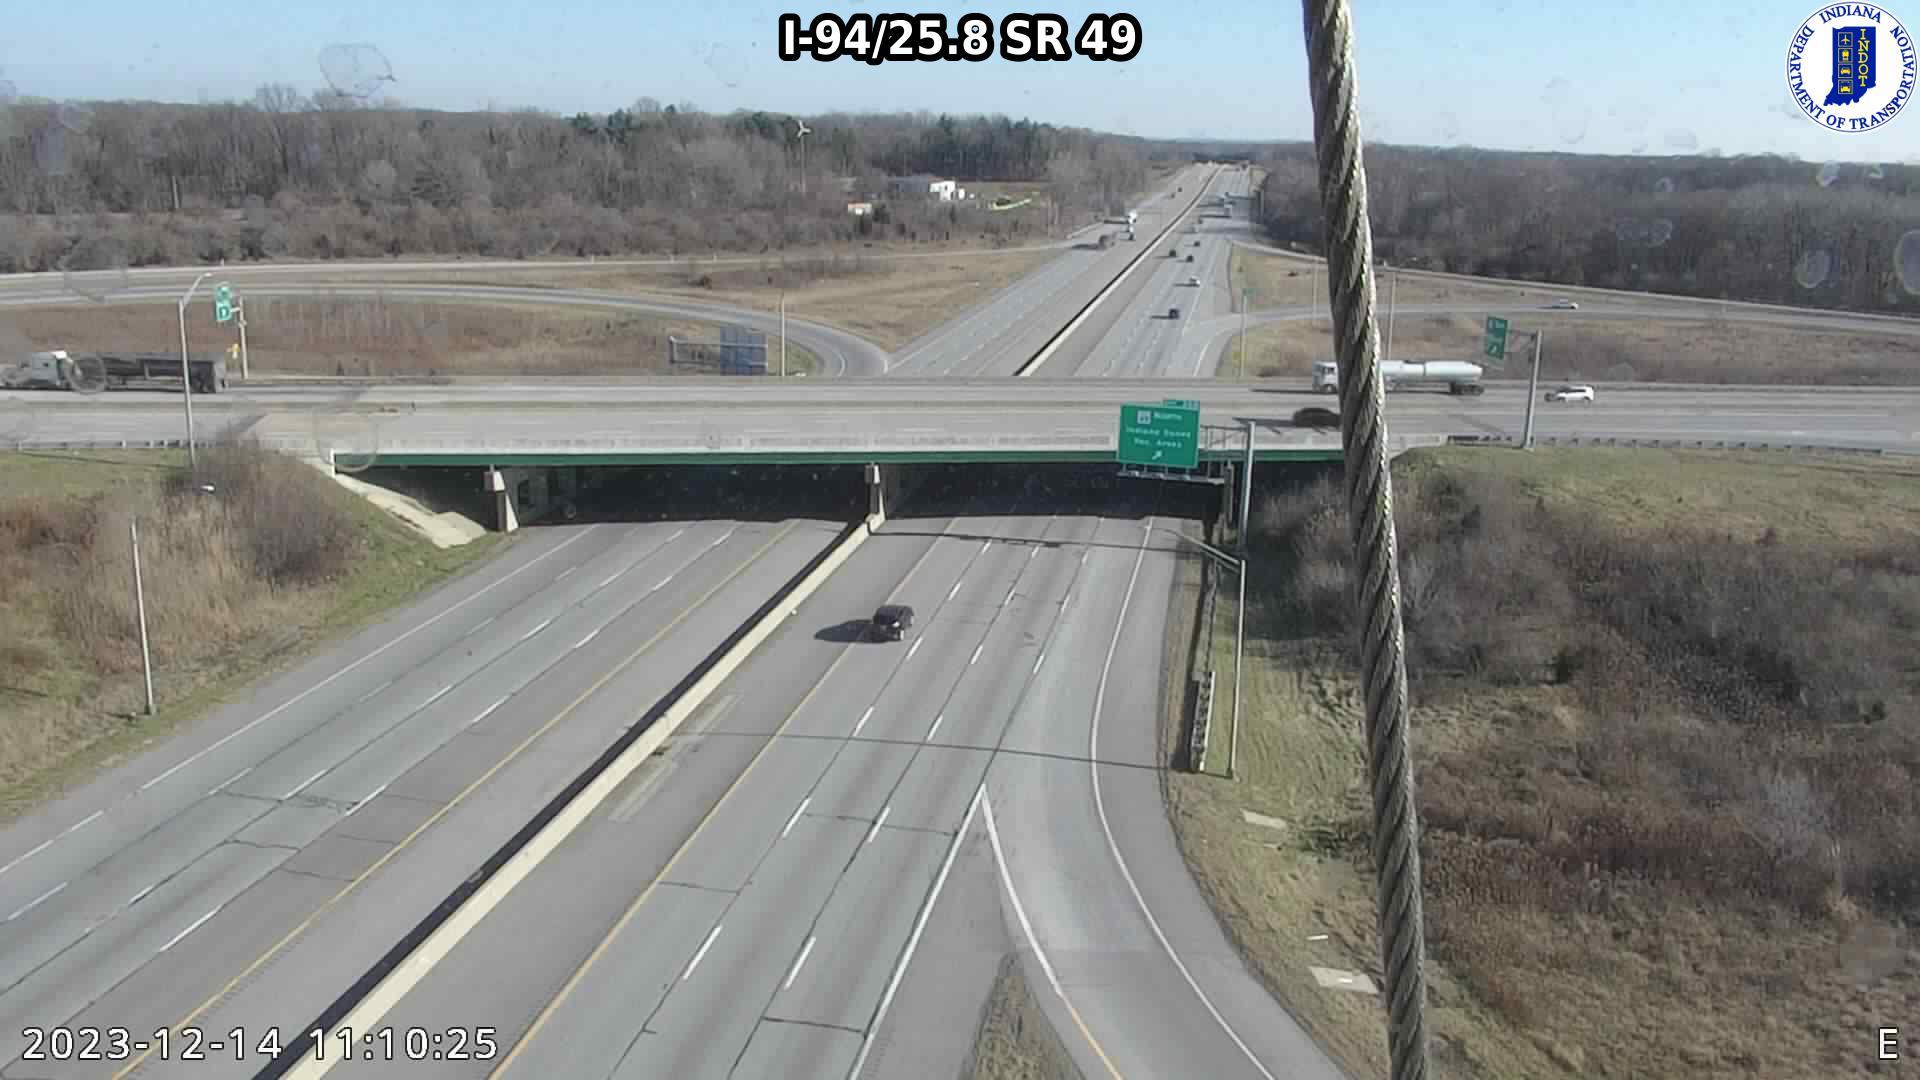 Traffic Cam Chesterton: I-94: I-94/25.8 SR 49 : I-94/25.8 SR 49 Player